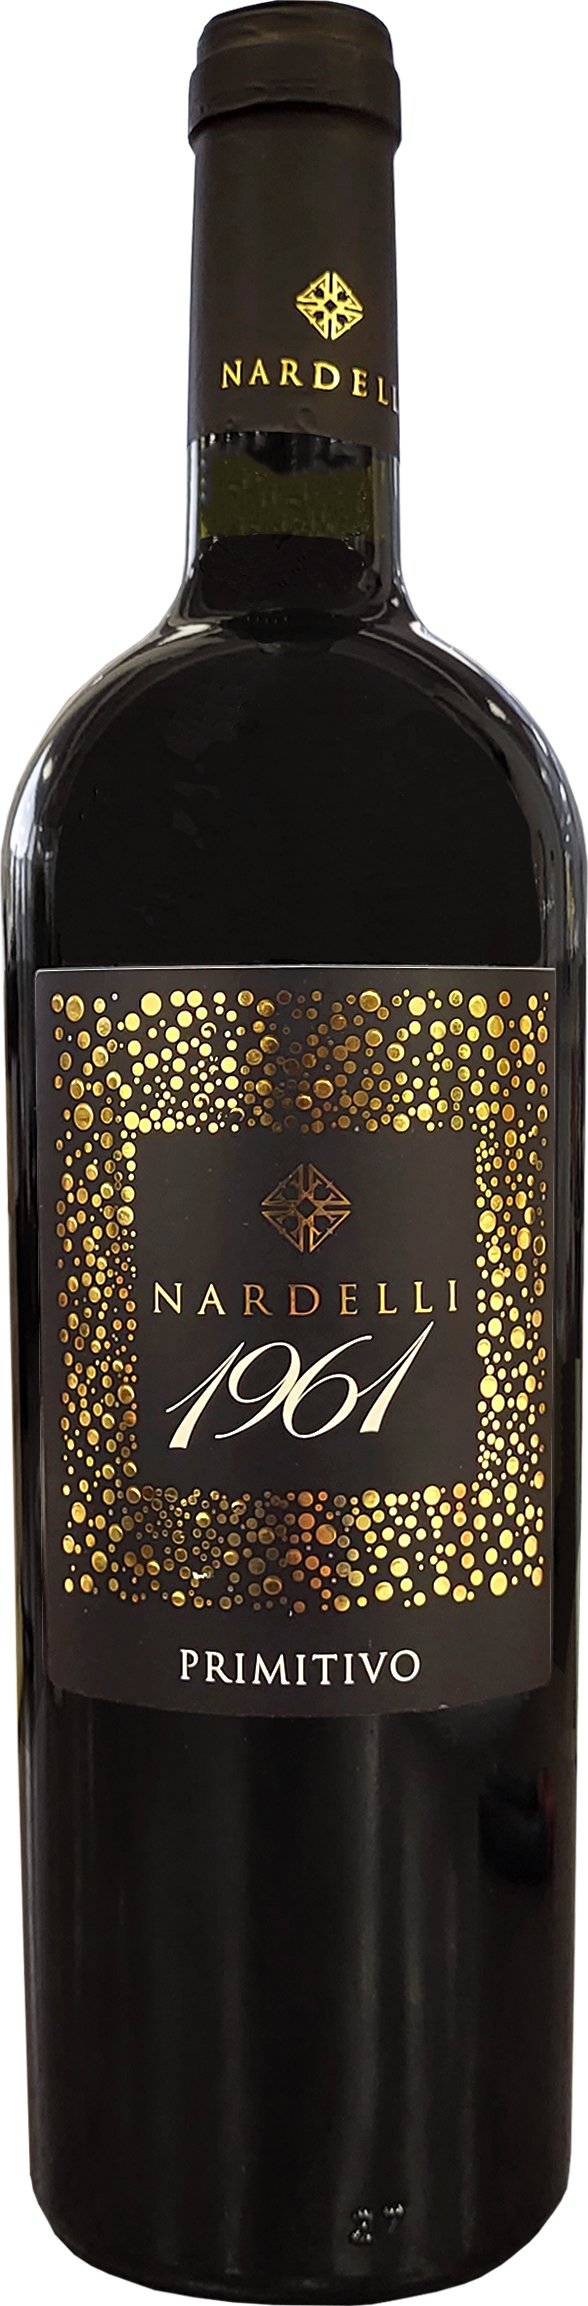 Nardelli 1961 BASE Primitivo Puglia, 0,75l